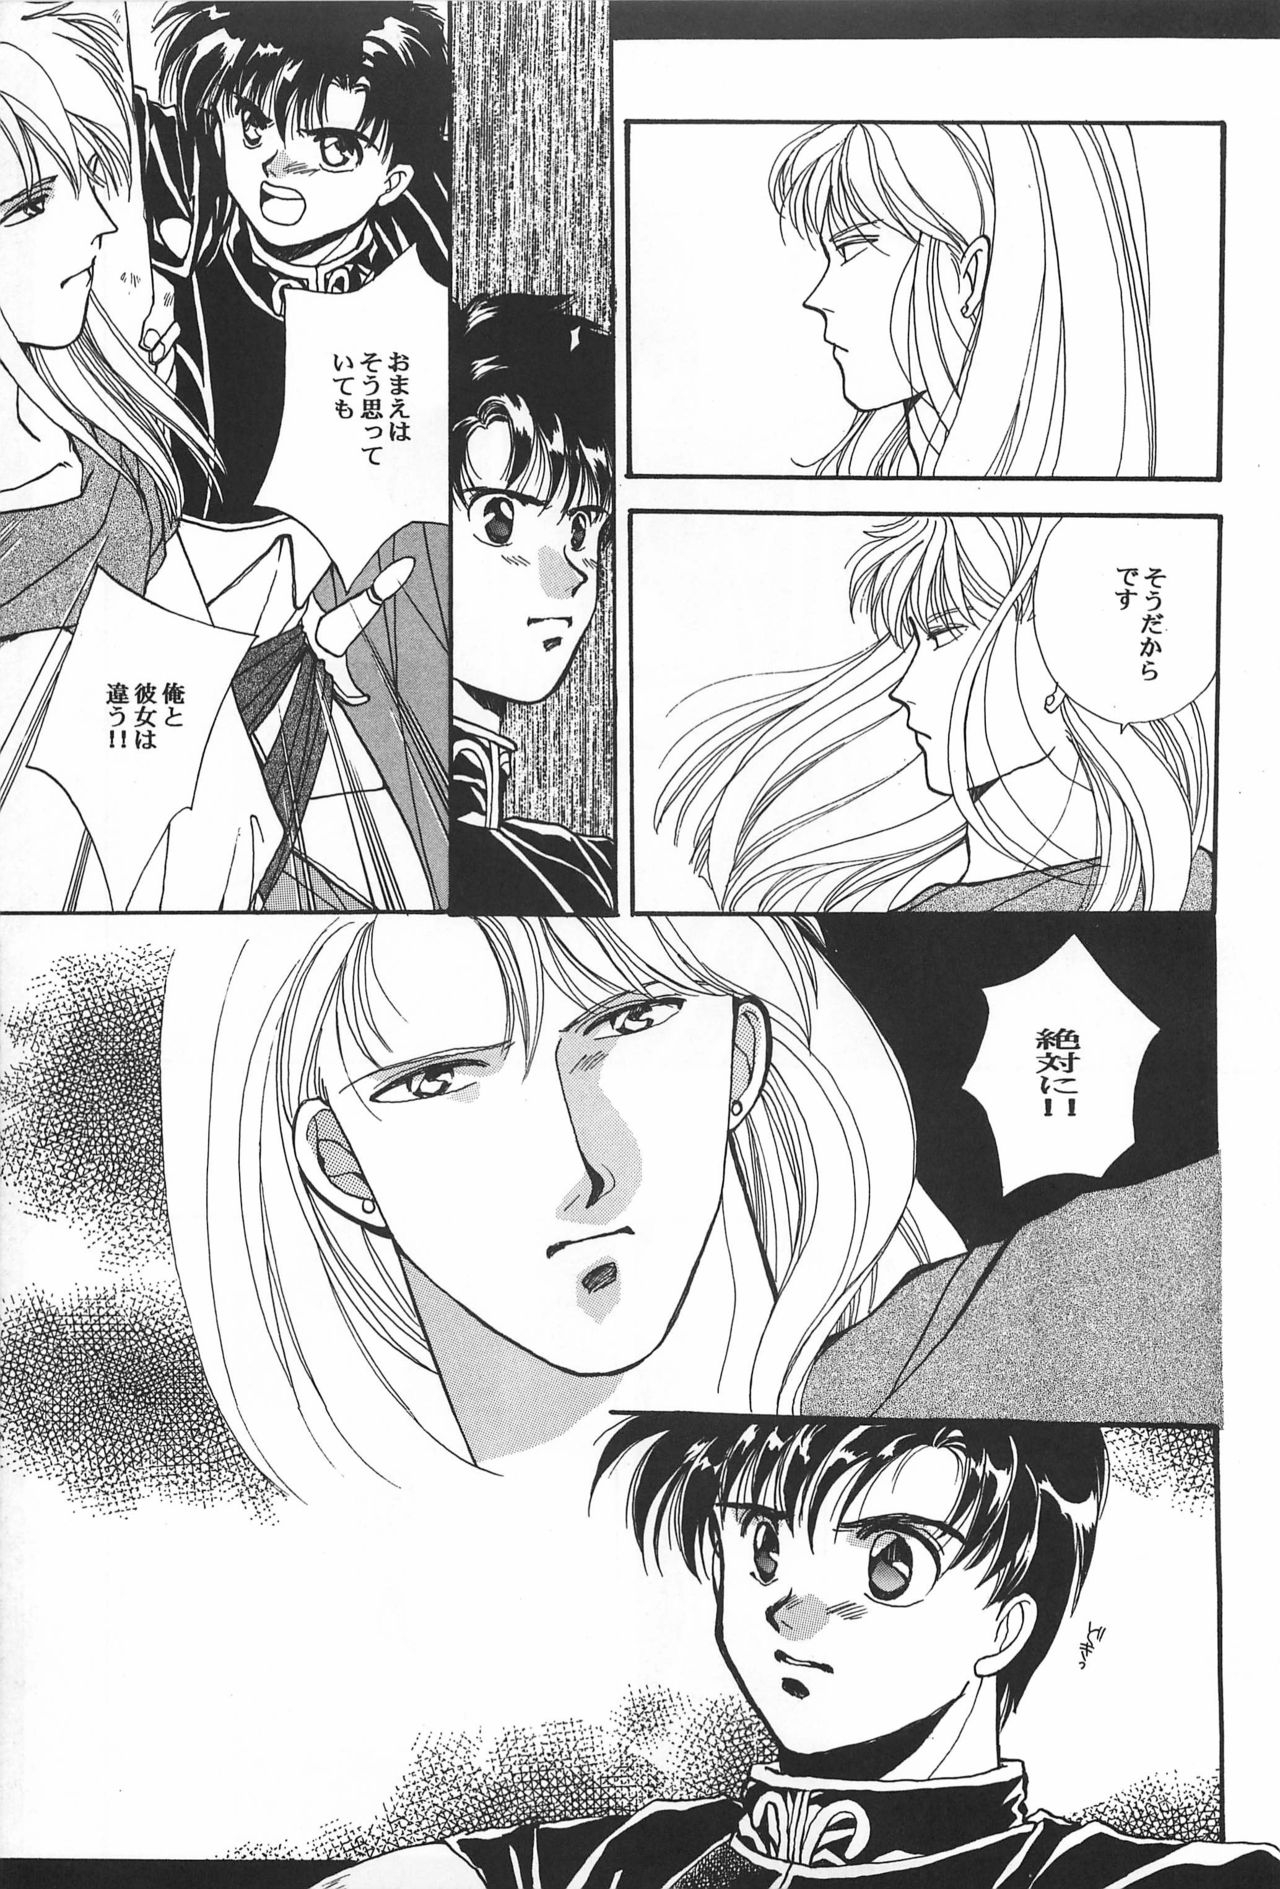 [Hello World (Muttri Moony)] Kaze no You ni Yume no You ni - Sailor Moon Collection (Sailor Moon) 24